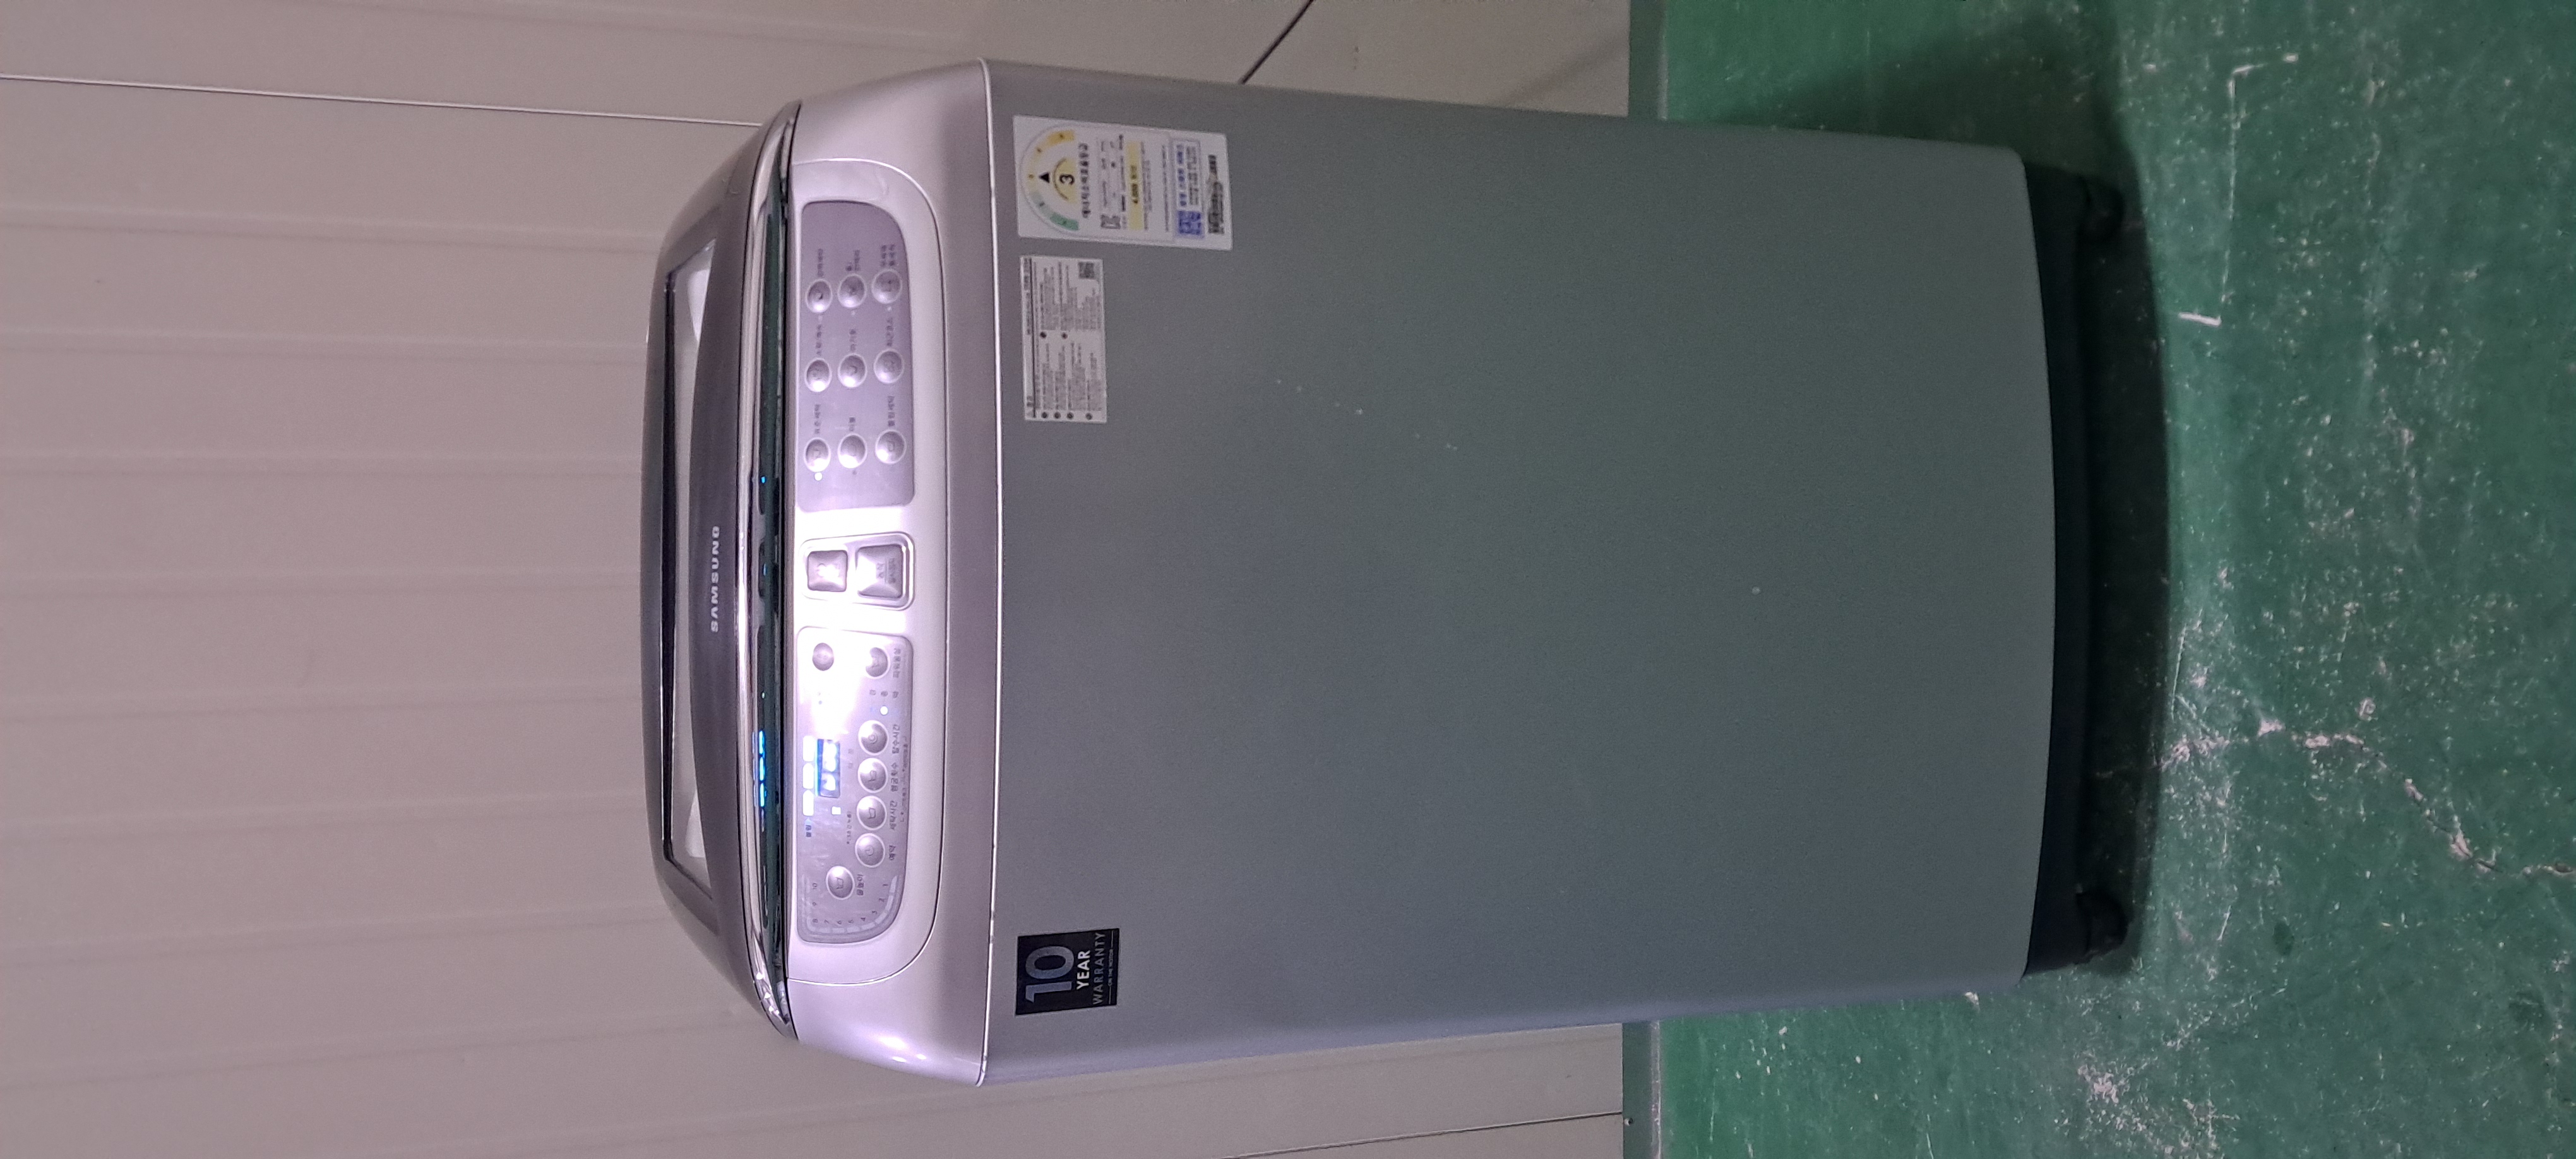 2545 삼성 15KG 통돌이세탁기(메탈실버)